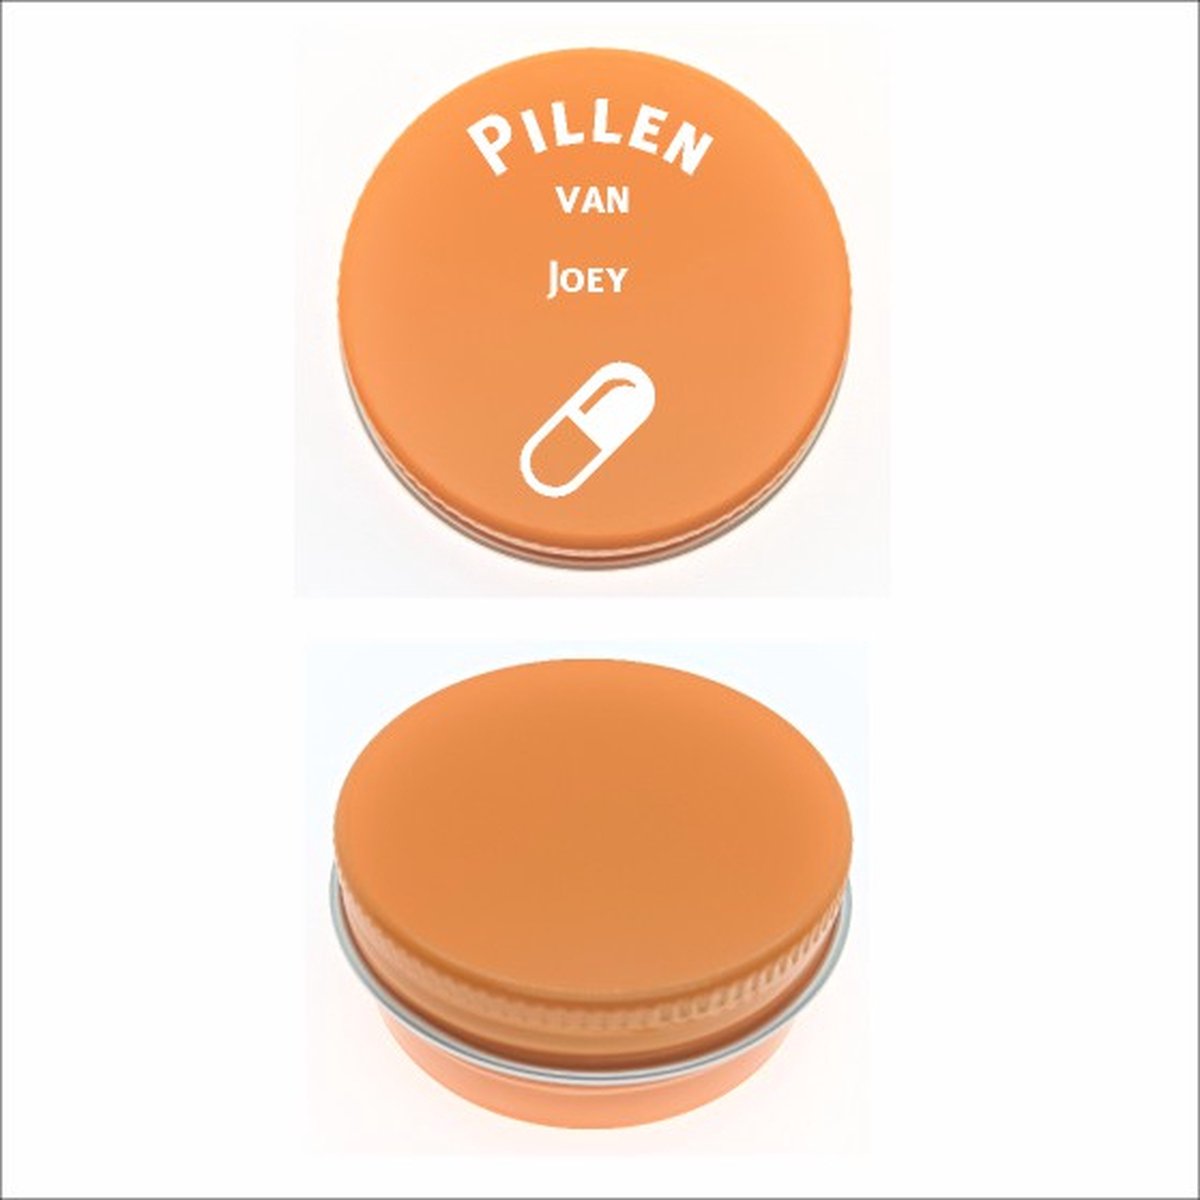 Pillen Blikje Met Naam Gravering - Joey